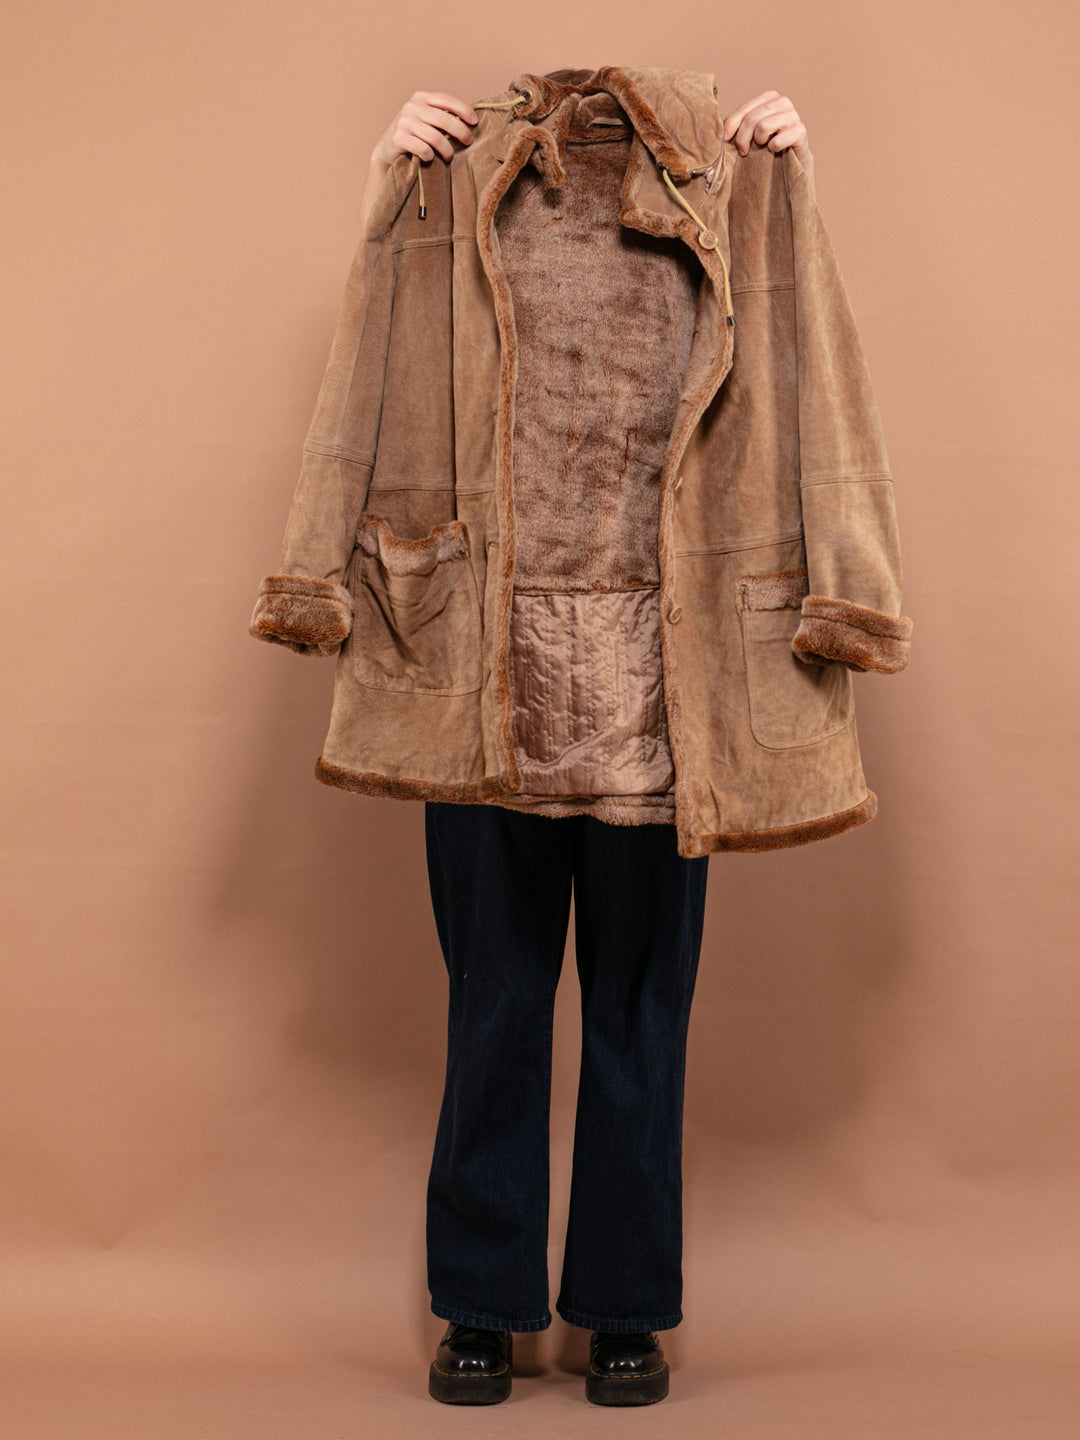 Hooded Suede Sherpa Coat 90's, Size Large XL, Vintage Women Button Up Coat, Beige Faux Sheepskin Coat, Boho Western Style Outerwear